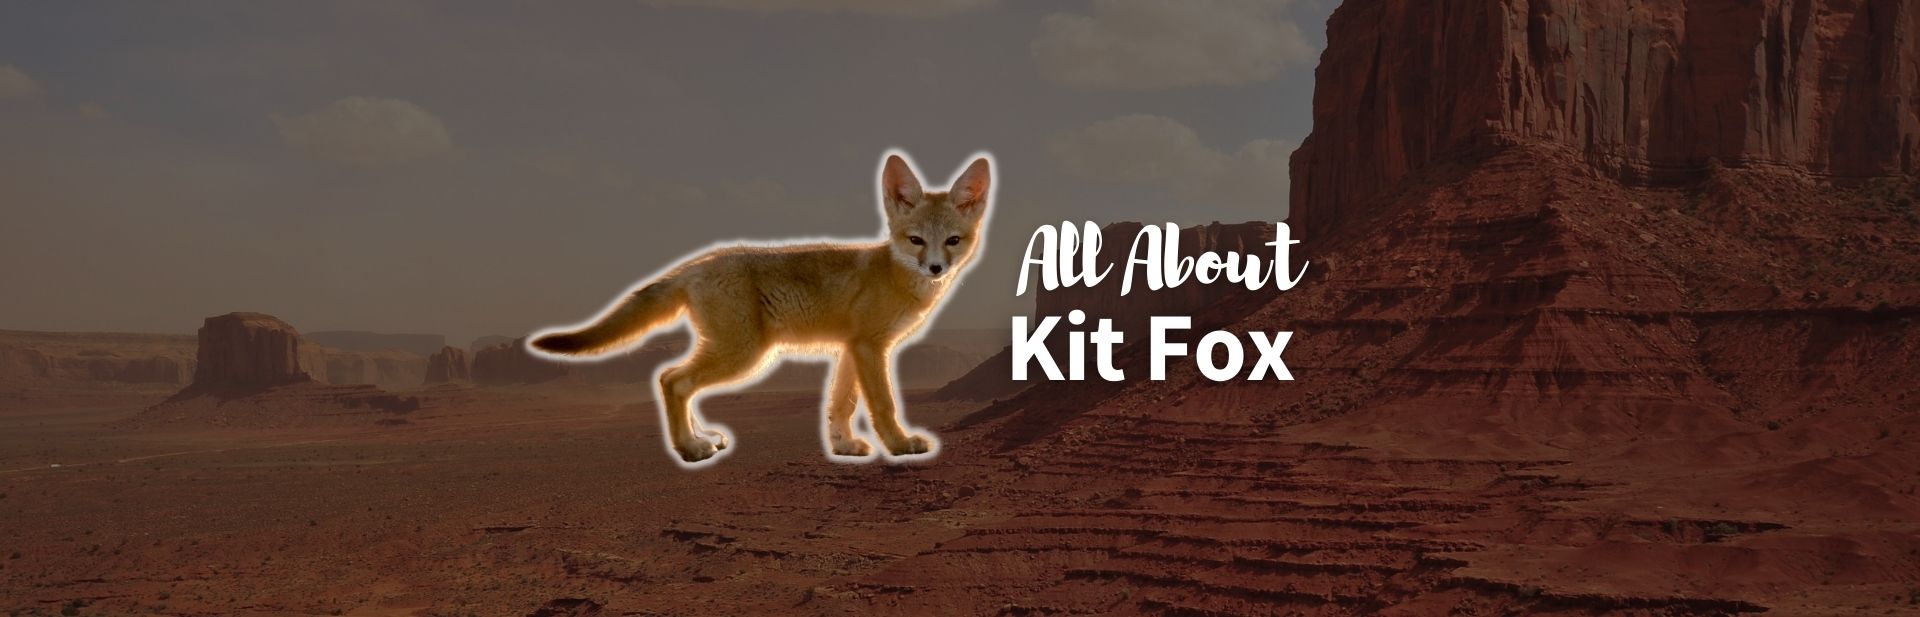 Kit Fox: The Amazing Desert Dweller